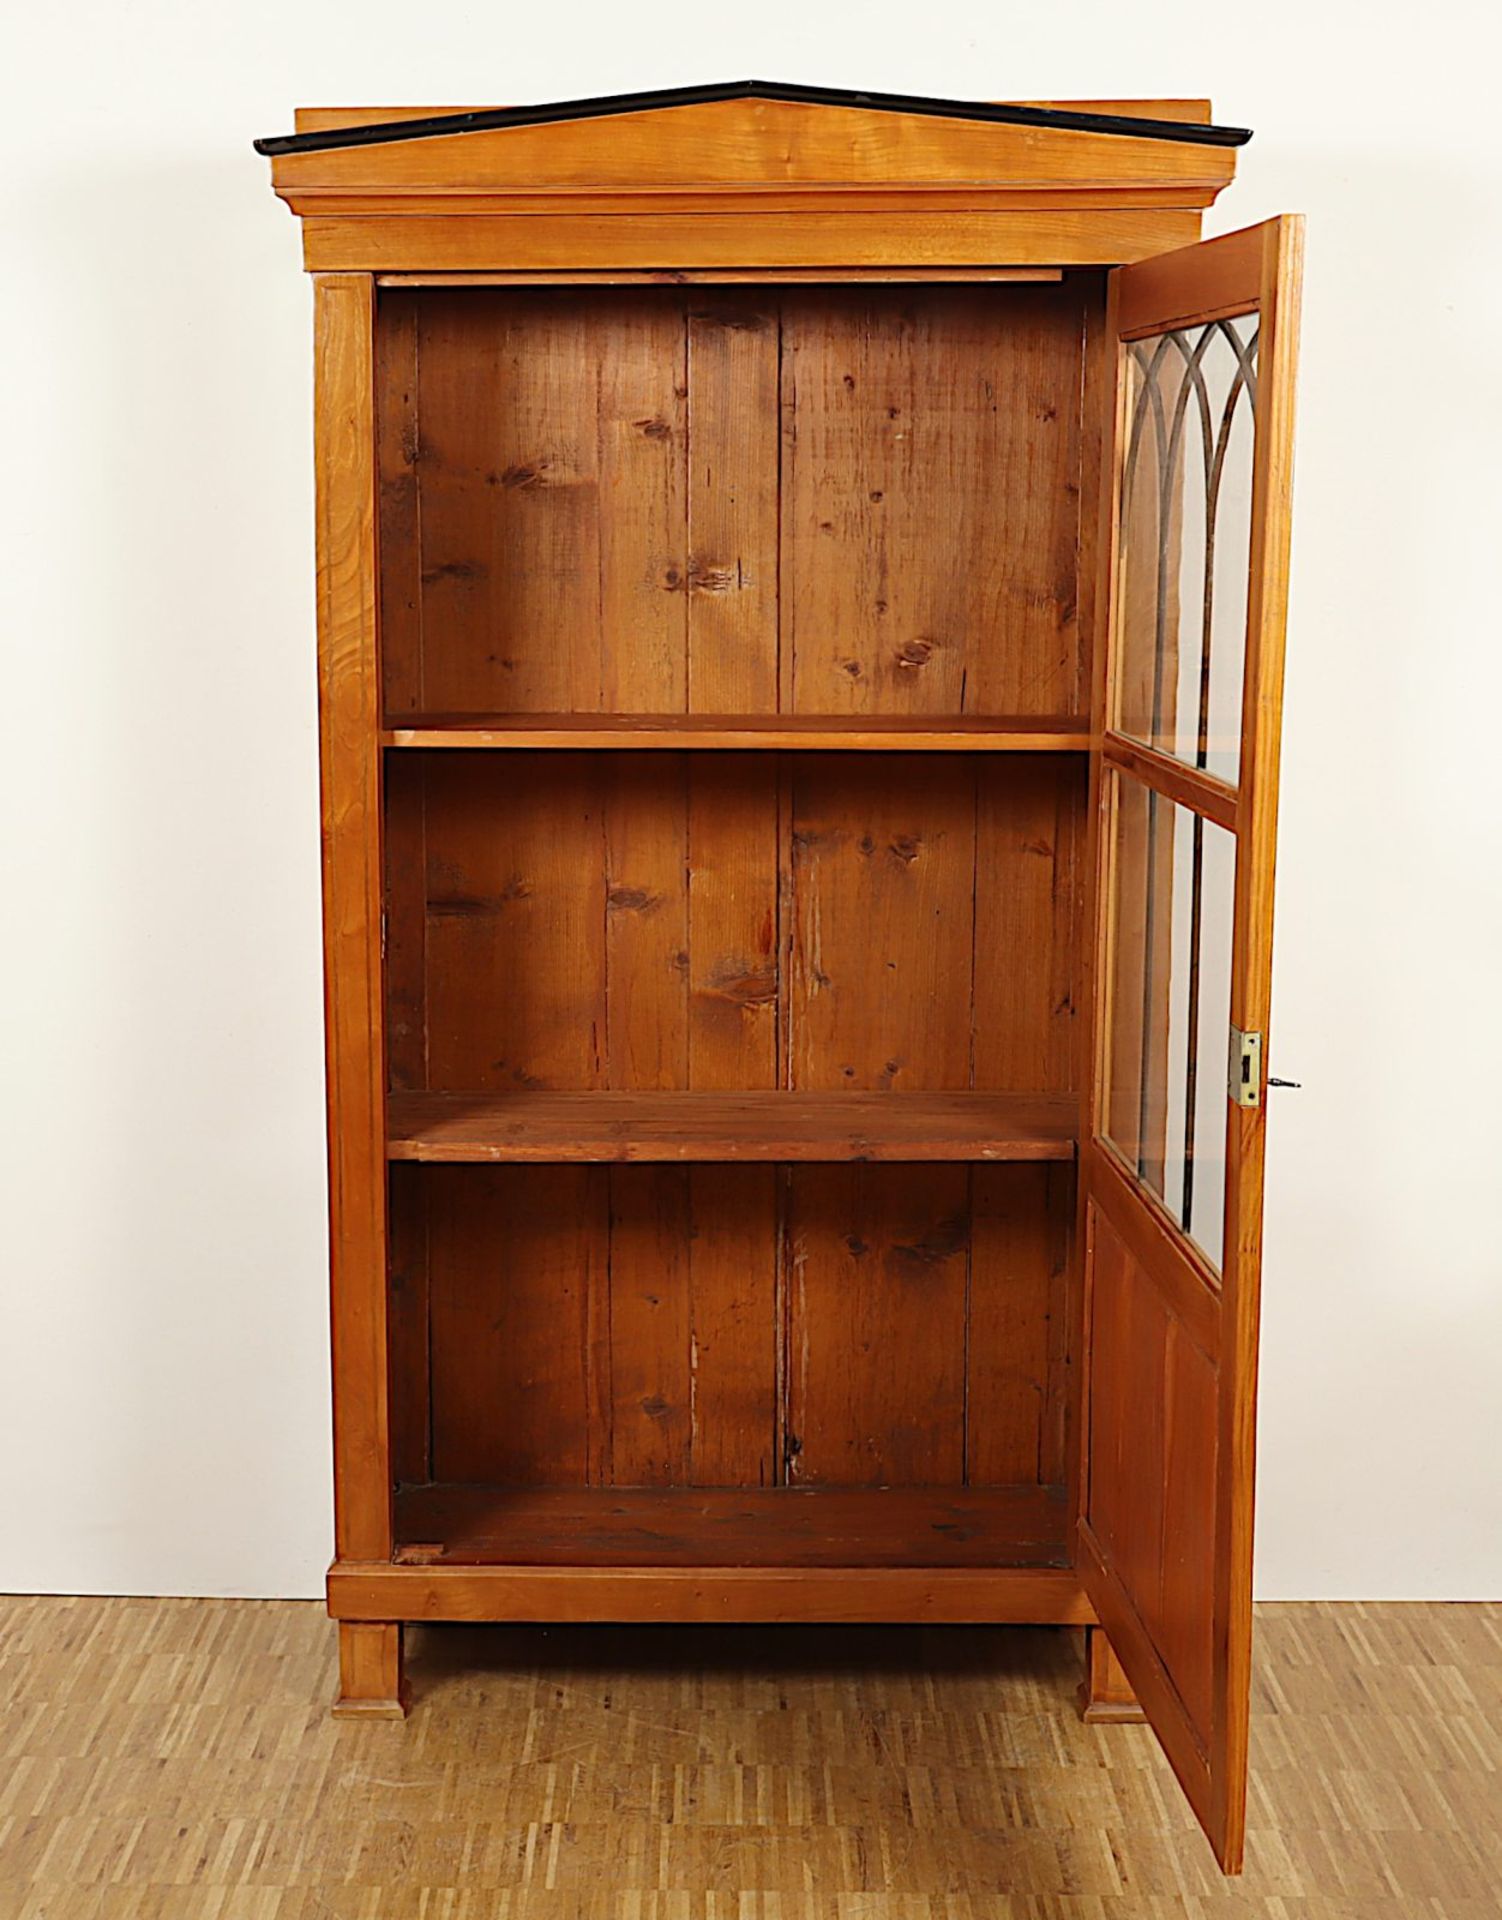 Bücherschrank, Biedermeierstil, wohl um 1900 - Bild 2 aus 4